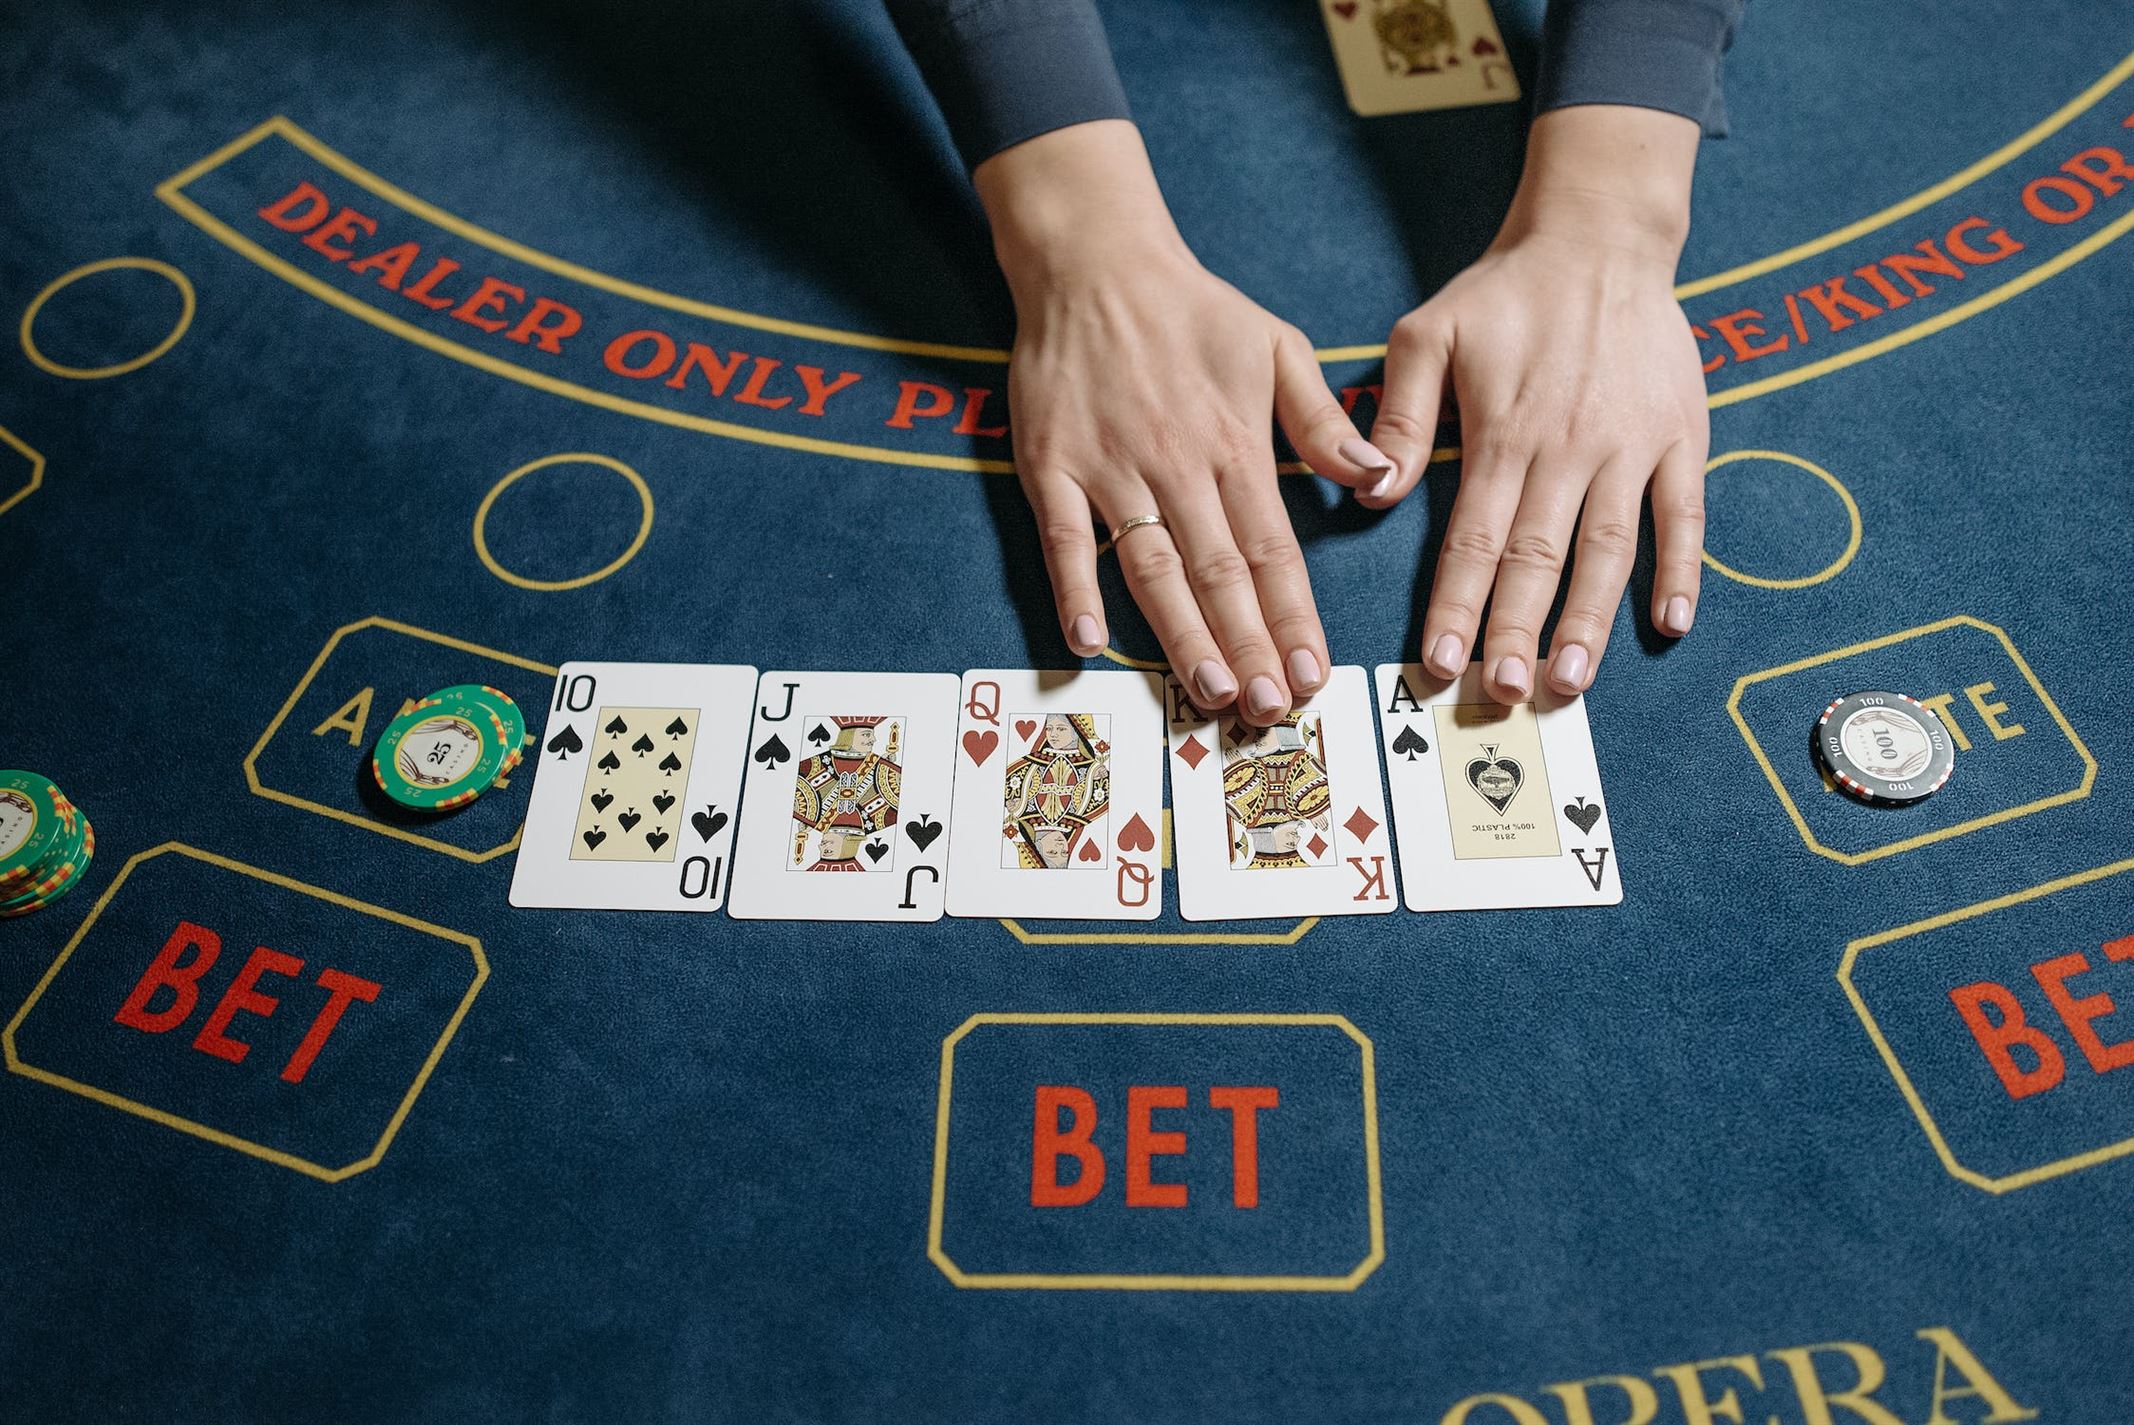 Få Mer Att Spela För: Njut av Enastående Pokerupplevelser med Bonusar Utan Insättning